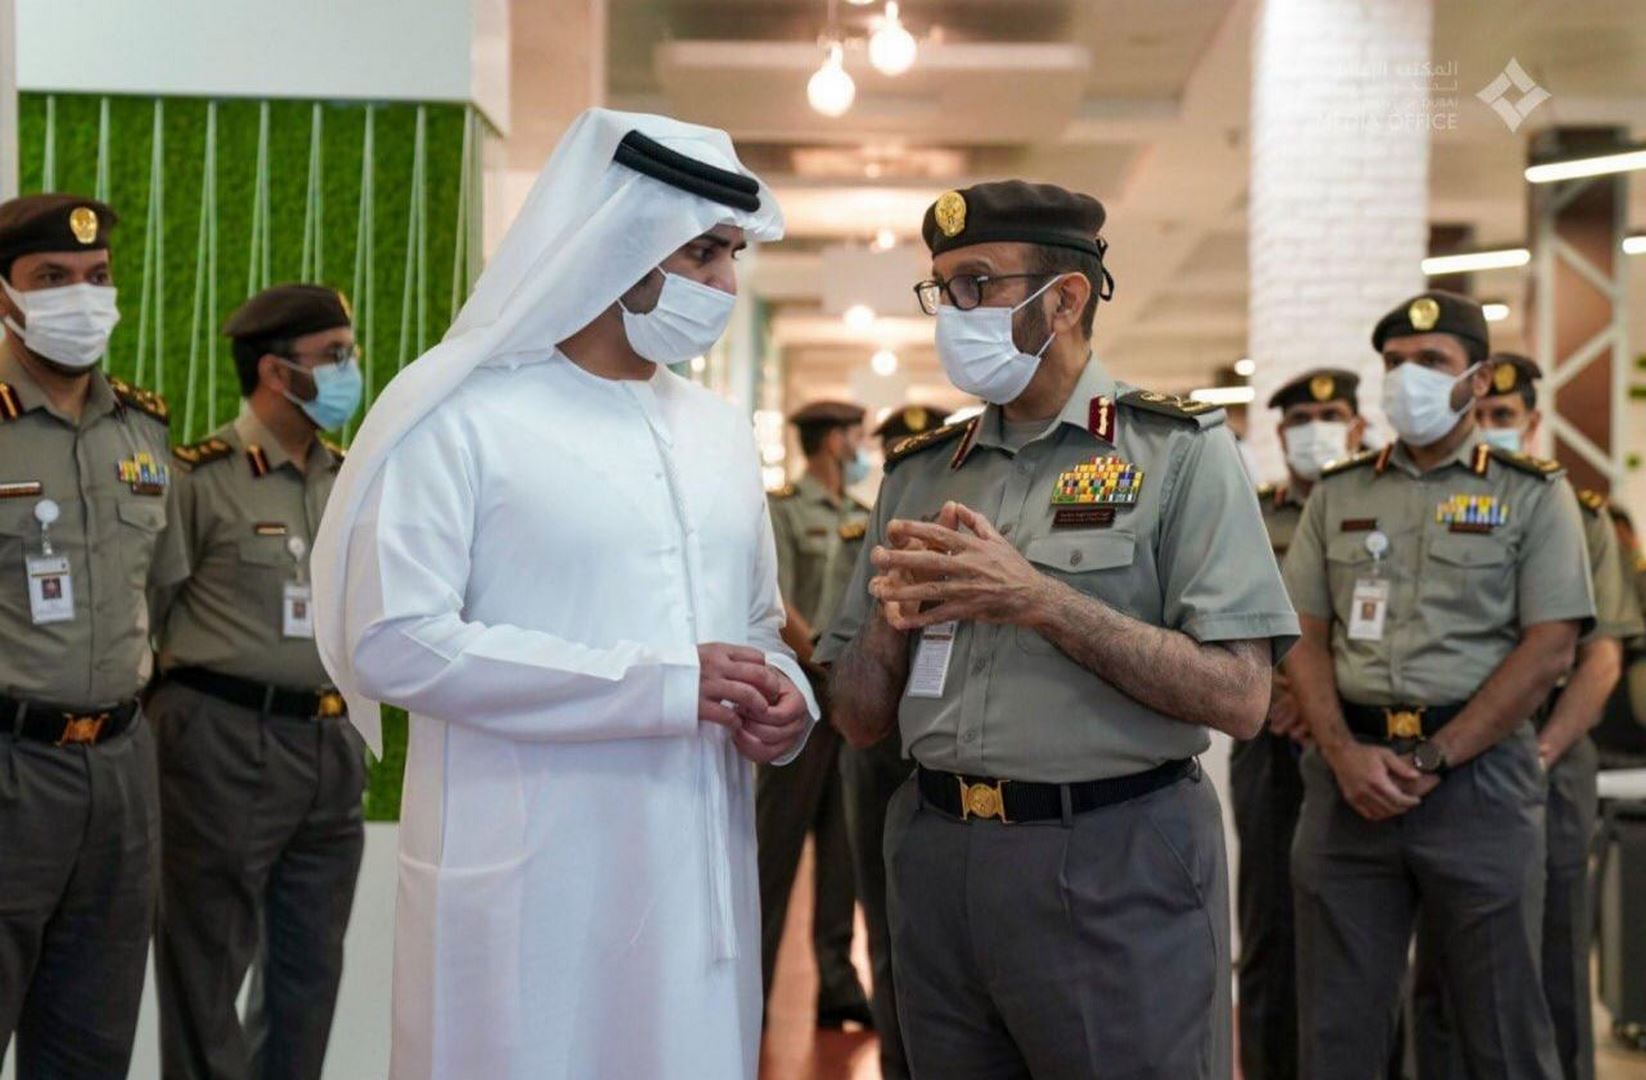 الإدارة العامة للإقامة وشؤون الأجانب دبي